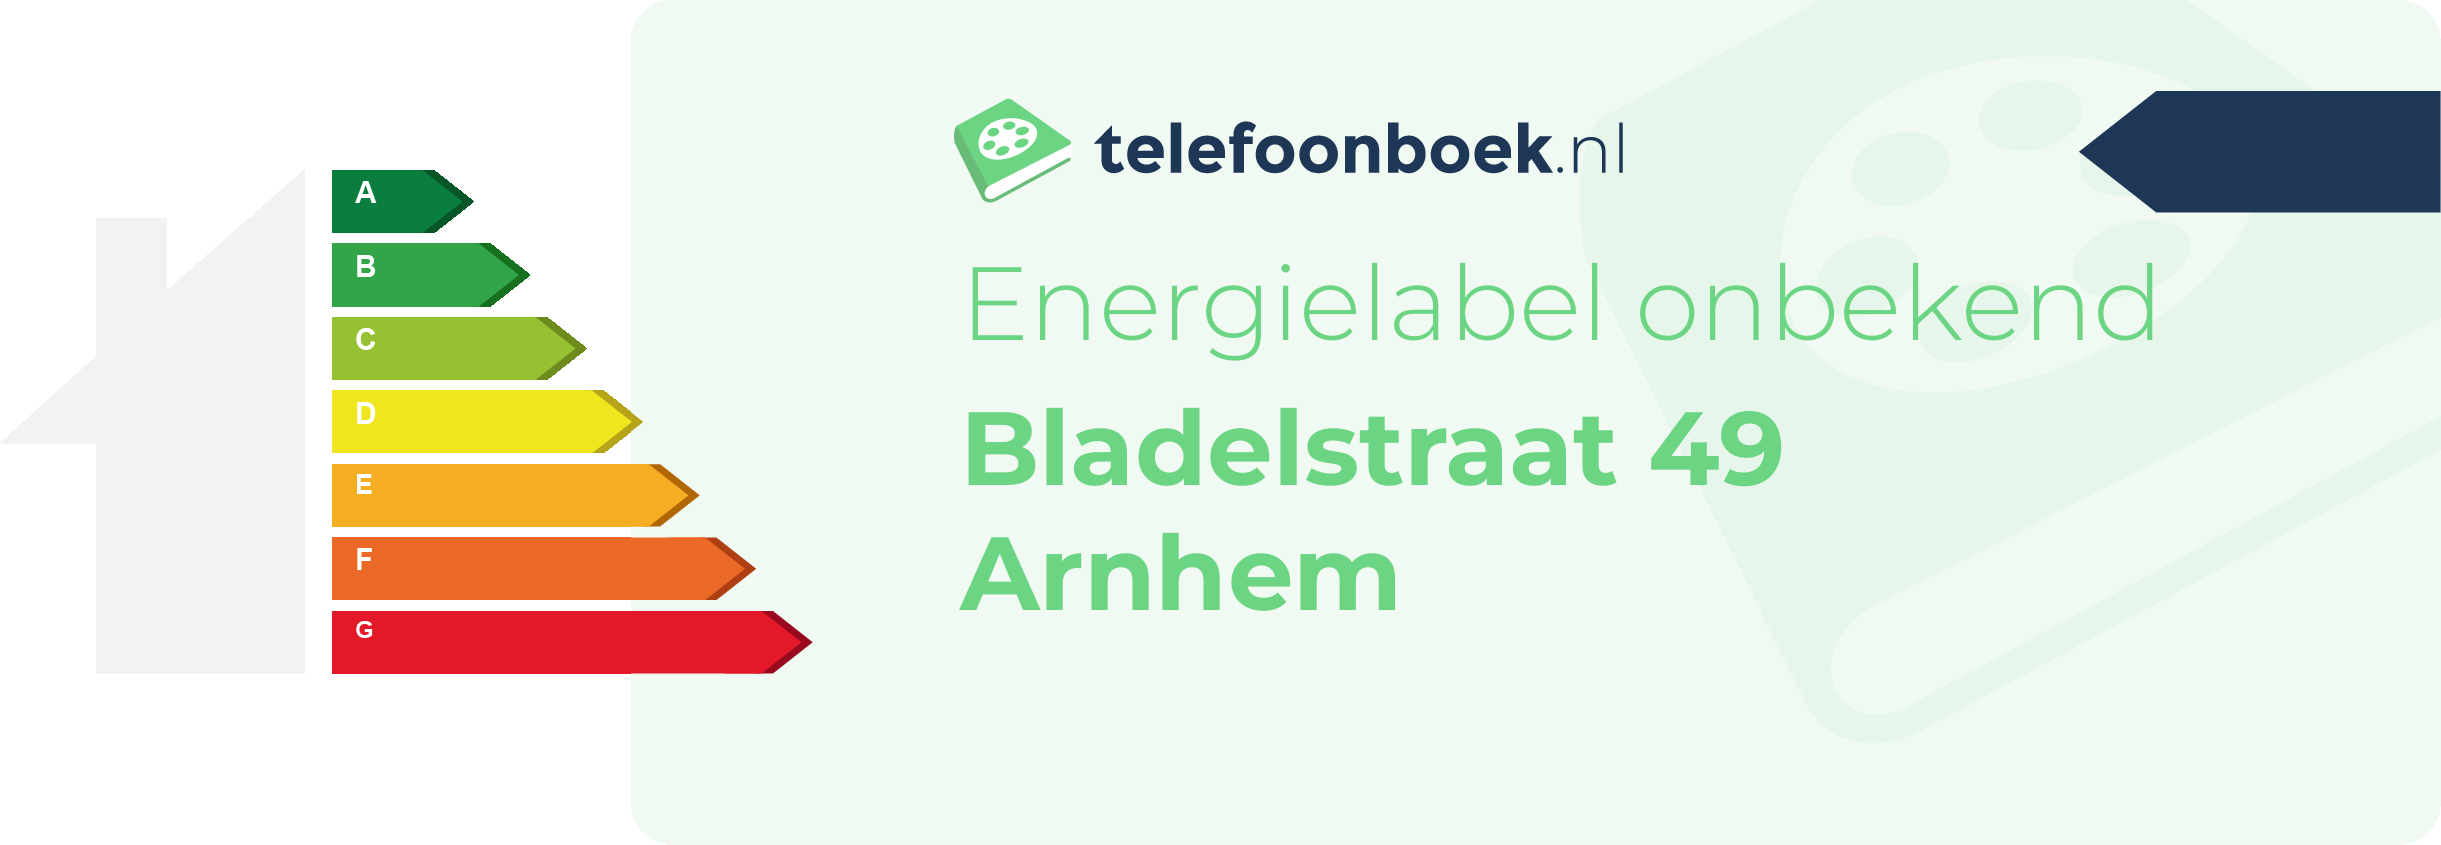 Energielabel Bladelstraat 49 Arnhem